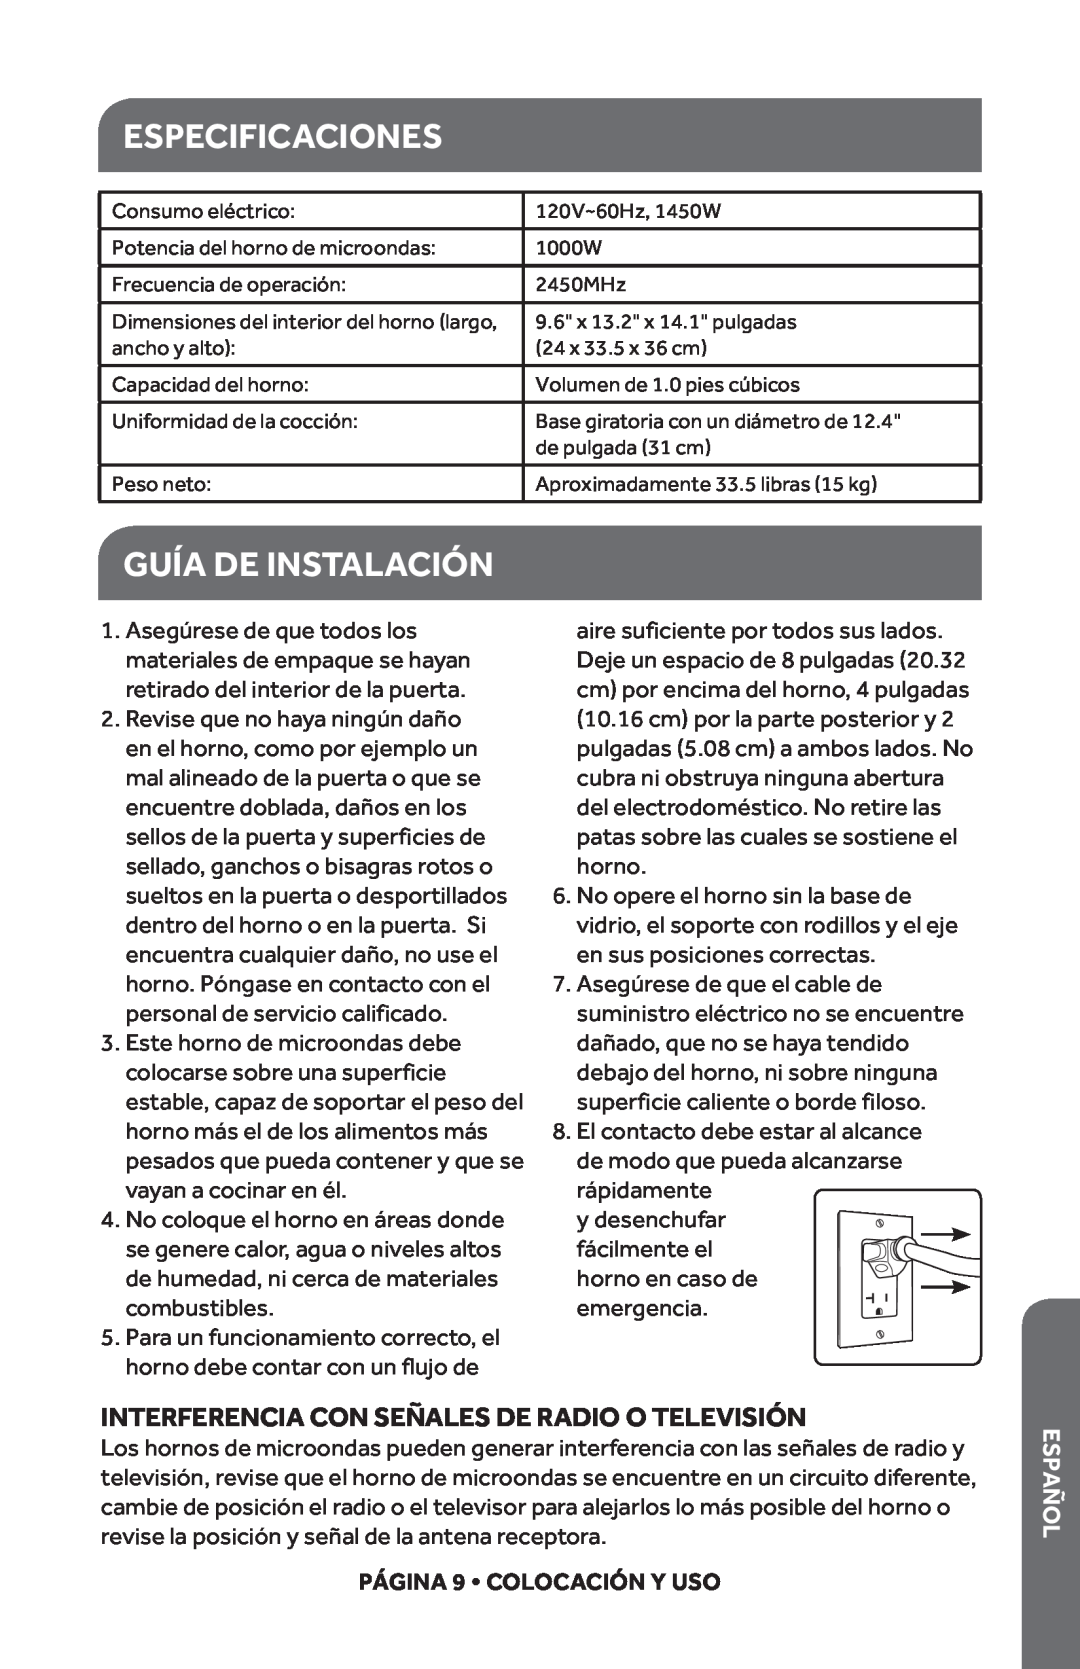 Haier HMC1035SESS Especificaciones, Guía De Instalación, Interferencia Con Señales De Radio O Televisión, Español 